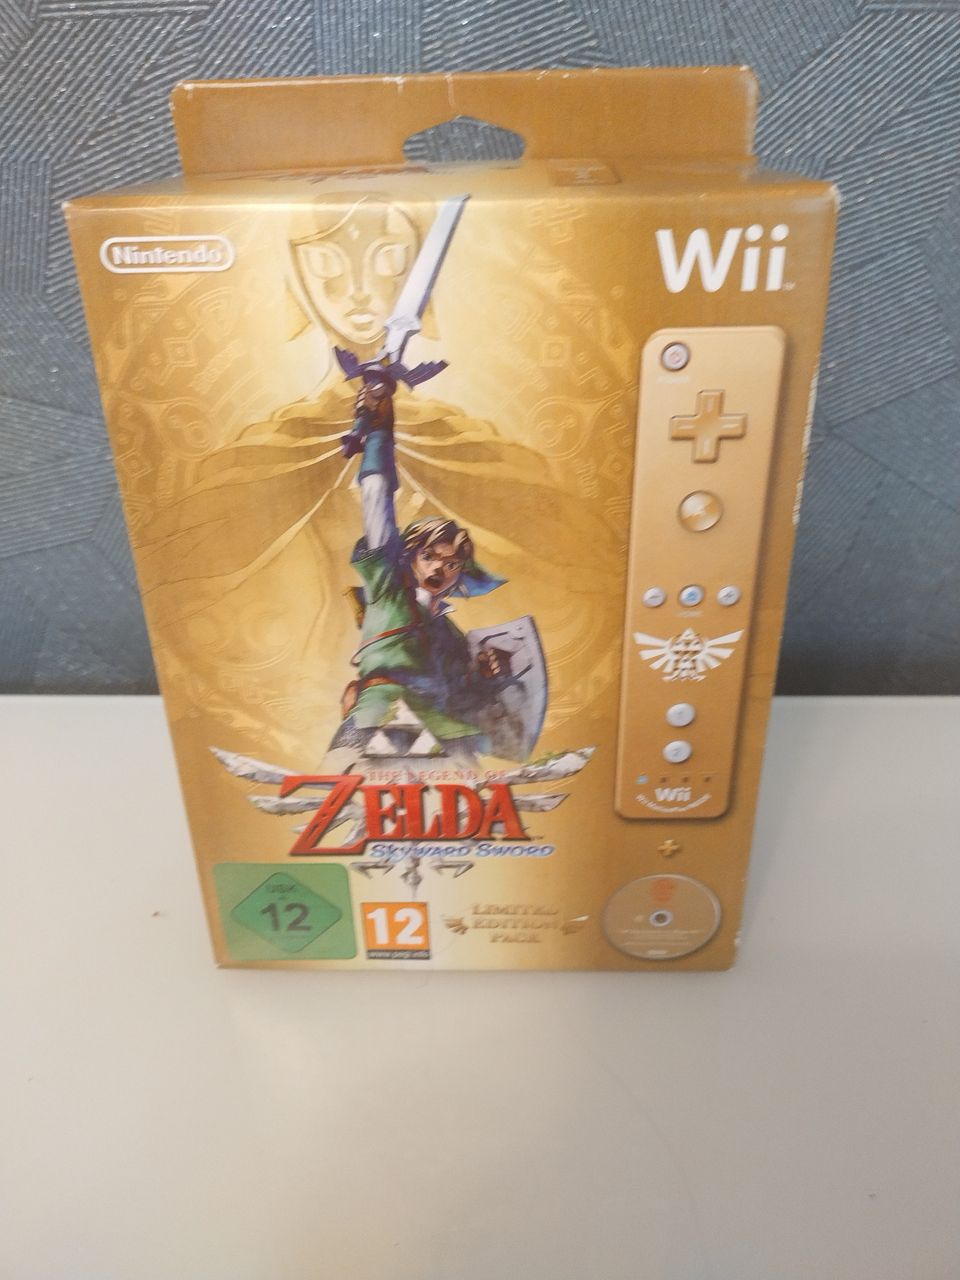 The Legend of Zelda skyward sword limited edition pack